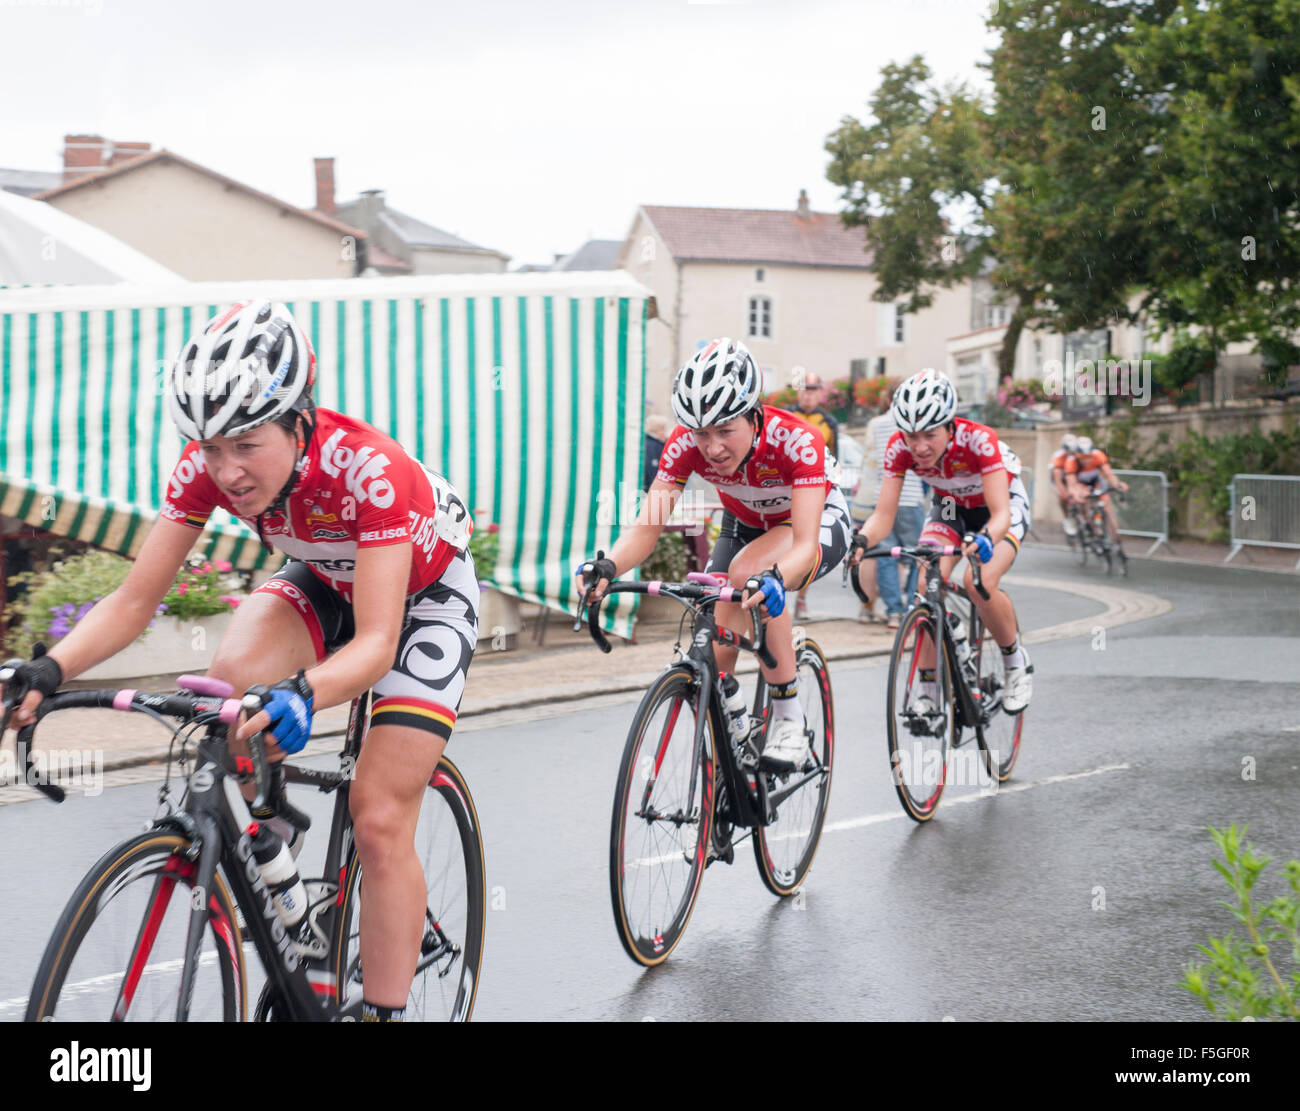 Route de France femminile, corsa in bicicletta, Mouilleron-en-Pareds. Composizione digitale dello stesso ciclista per tre volte Foto Stock